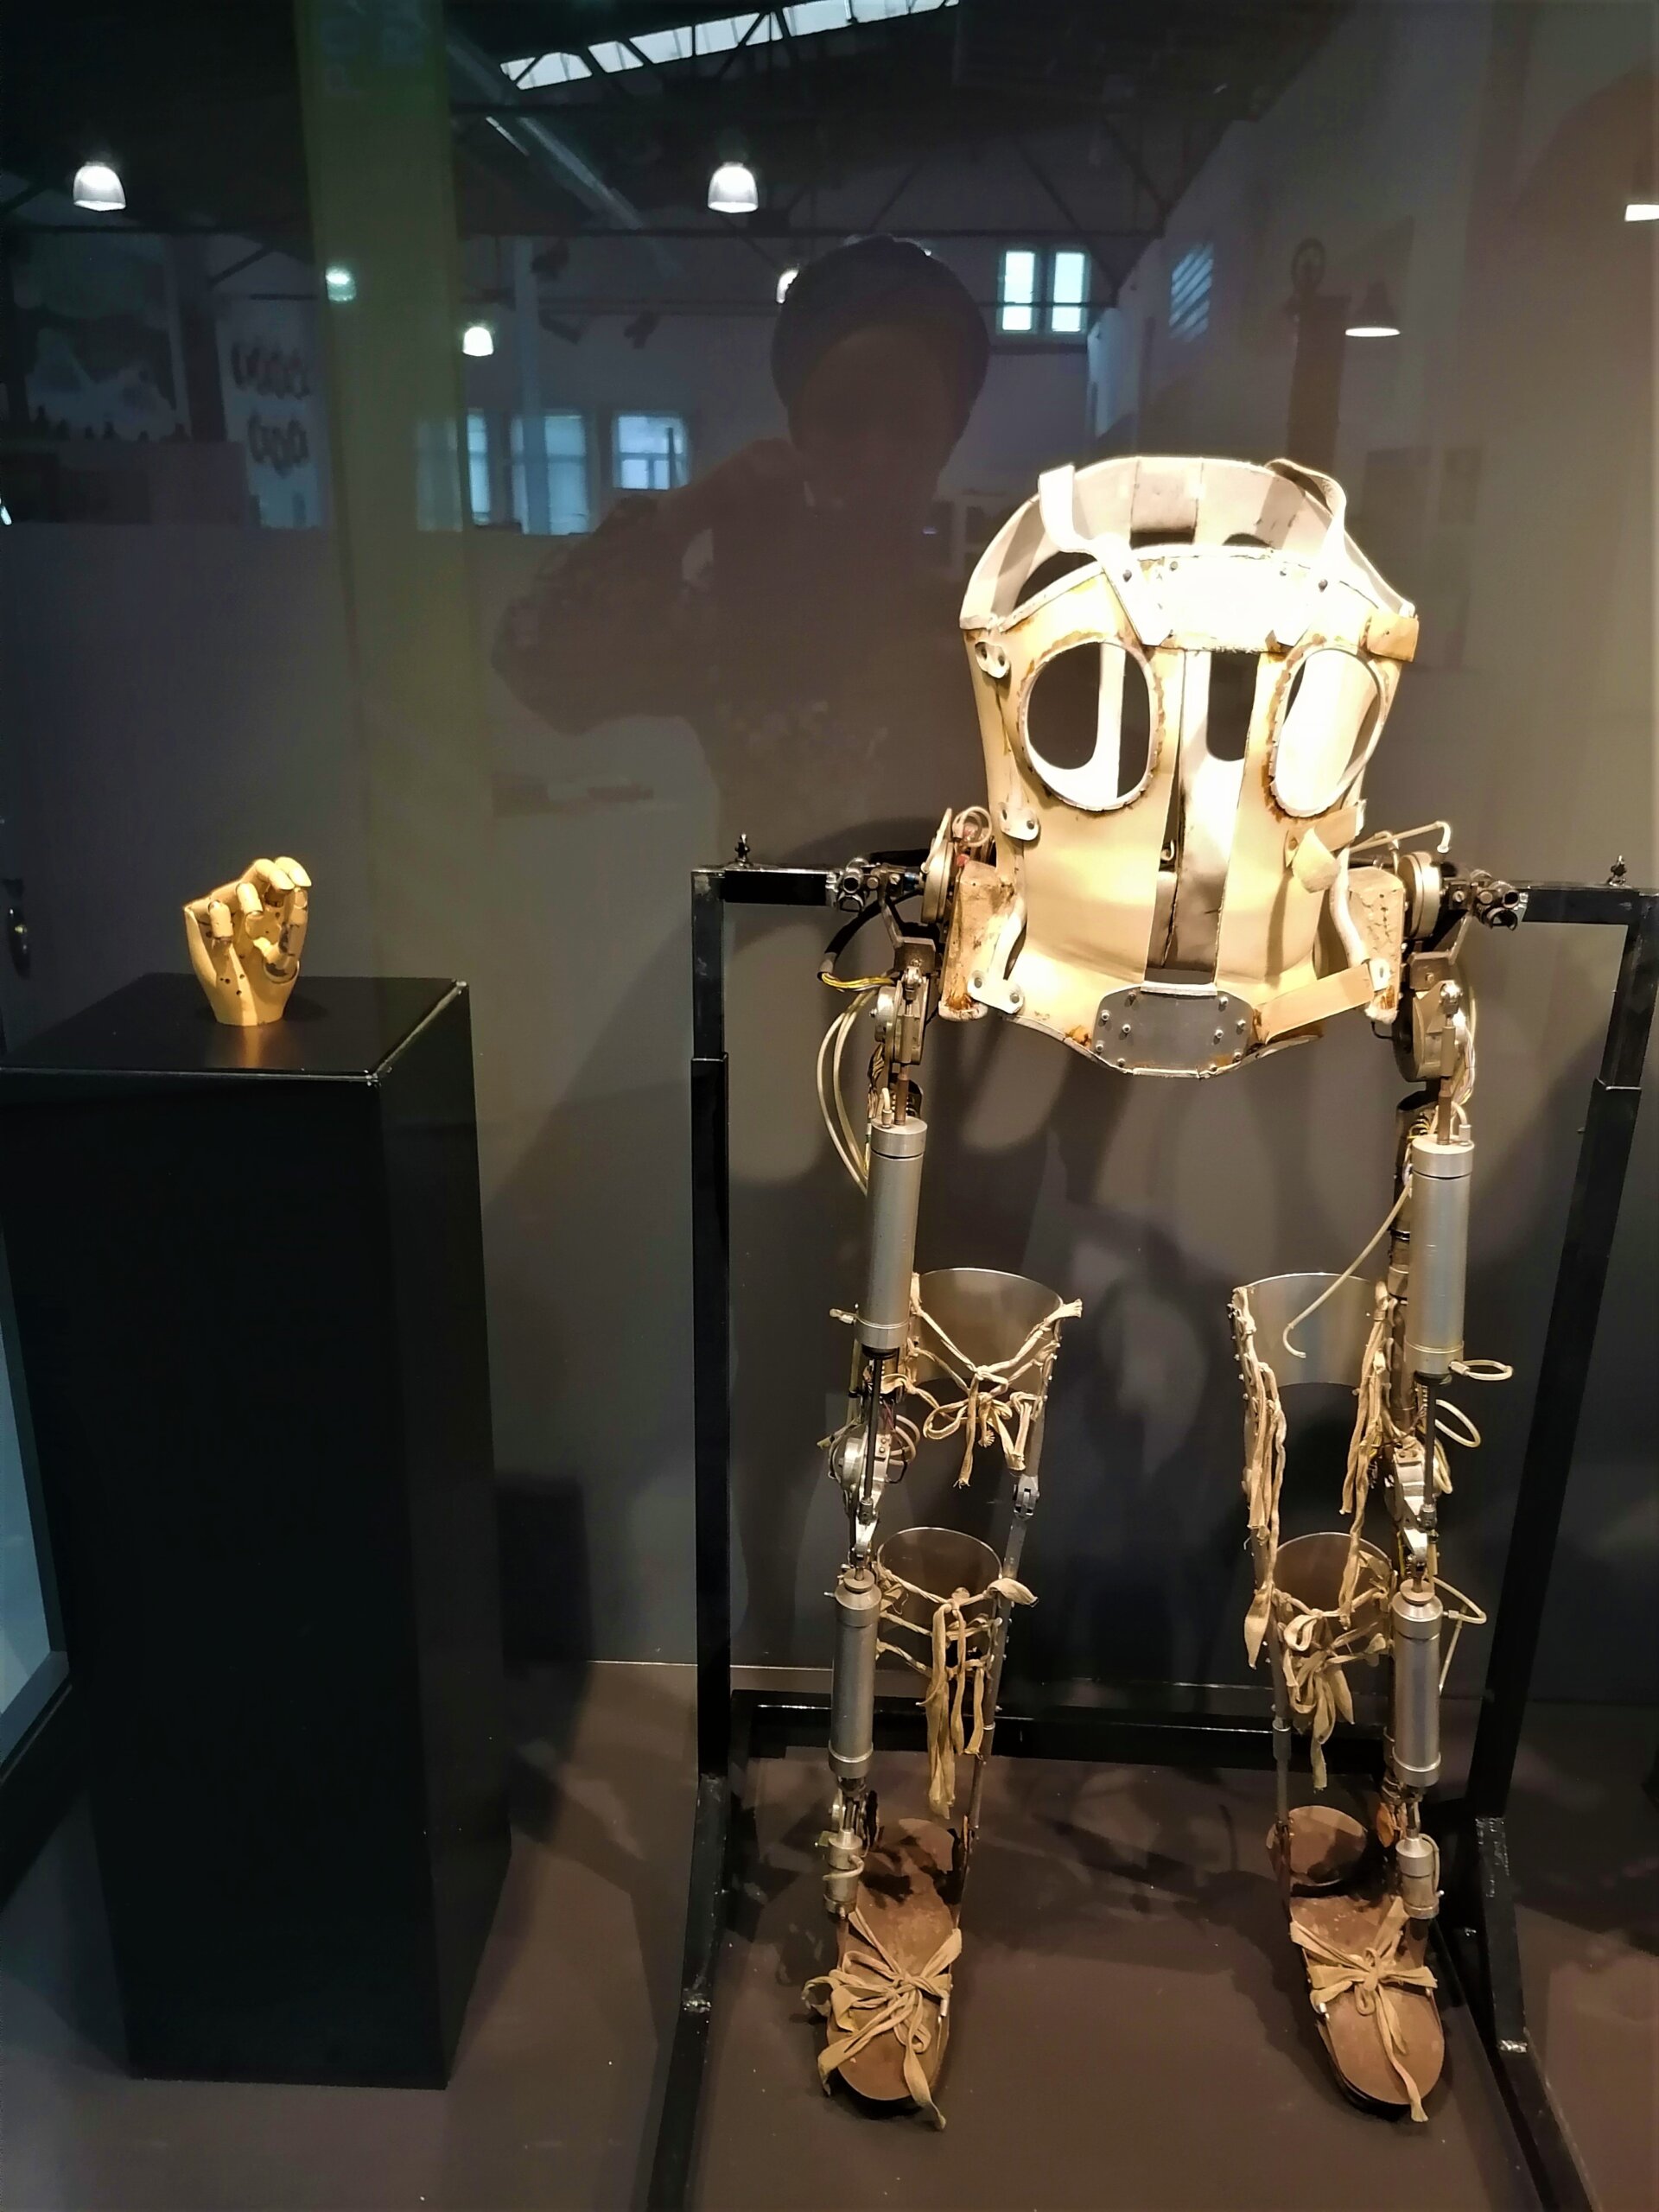 Beograd kao kolevka humanoidne robotike: Da li ste znali da je prva bionička šaka napravljena kod nas? 3